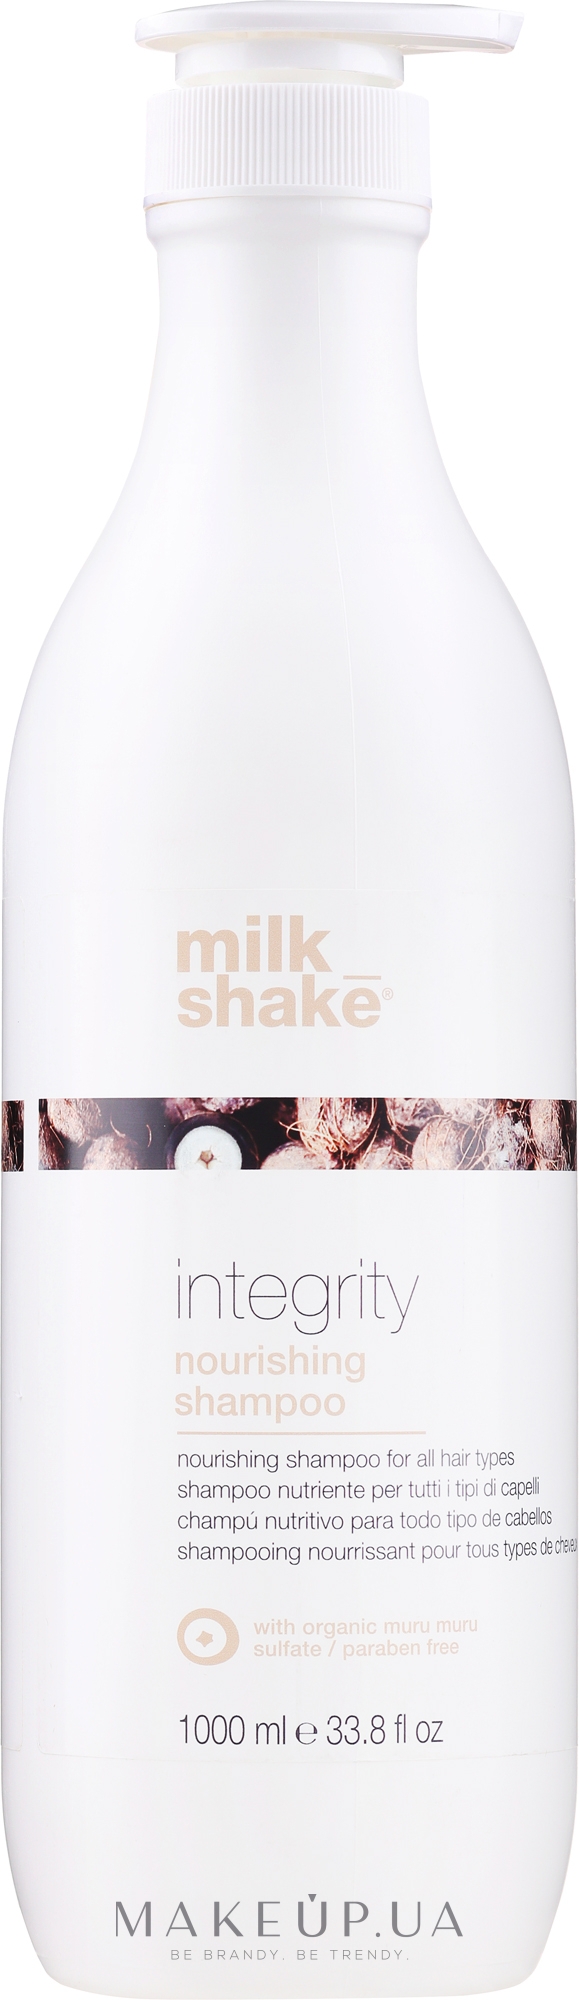 Живильний шампунь для всіх типів волосся - Milk Shake Integrity Nourishing Shampoo — фото 1000ml